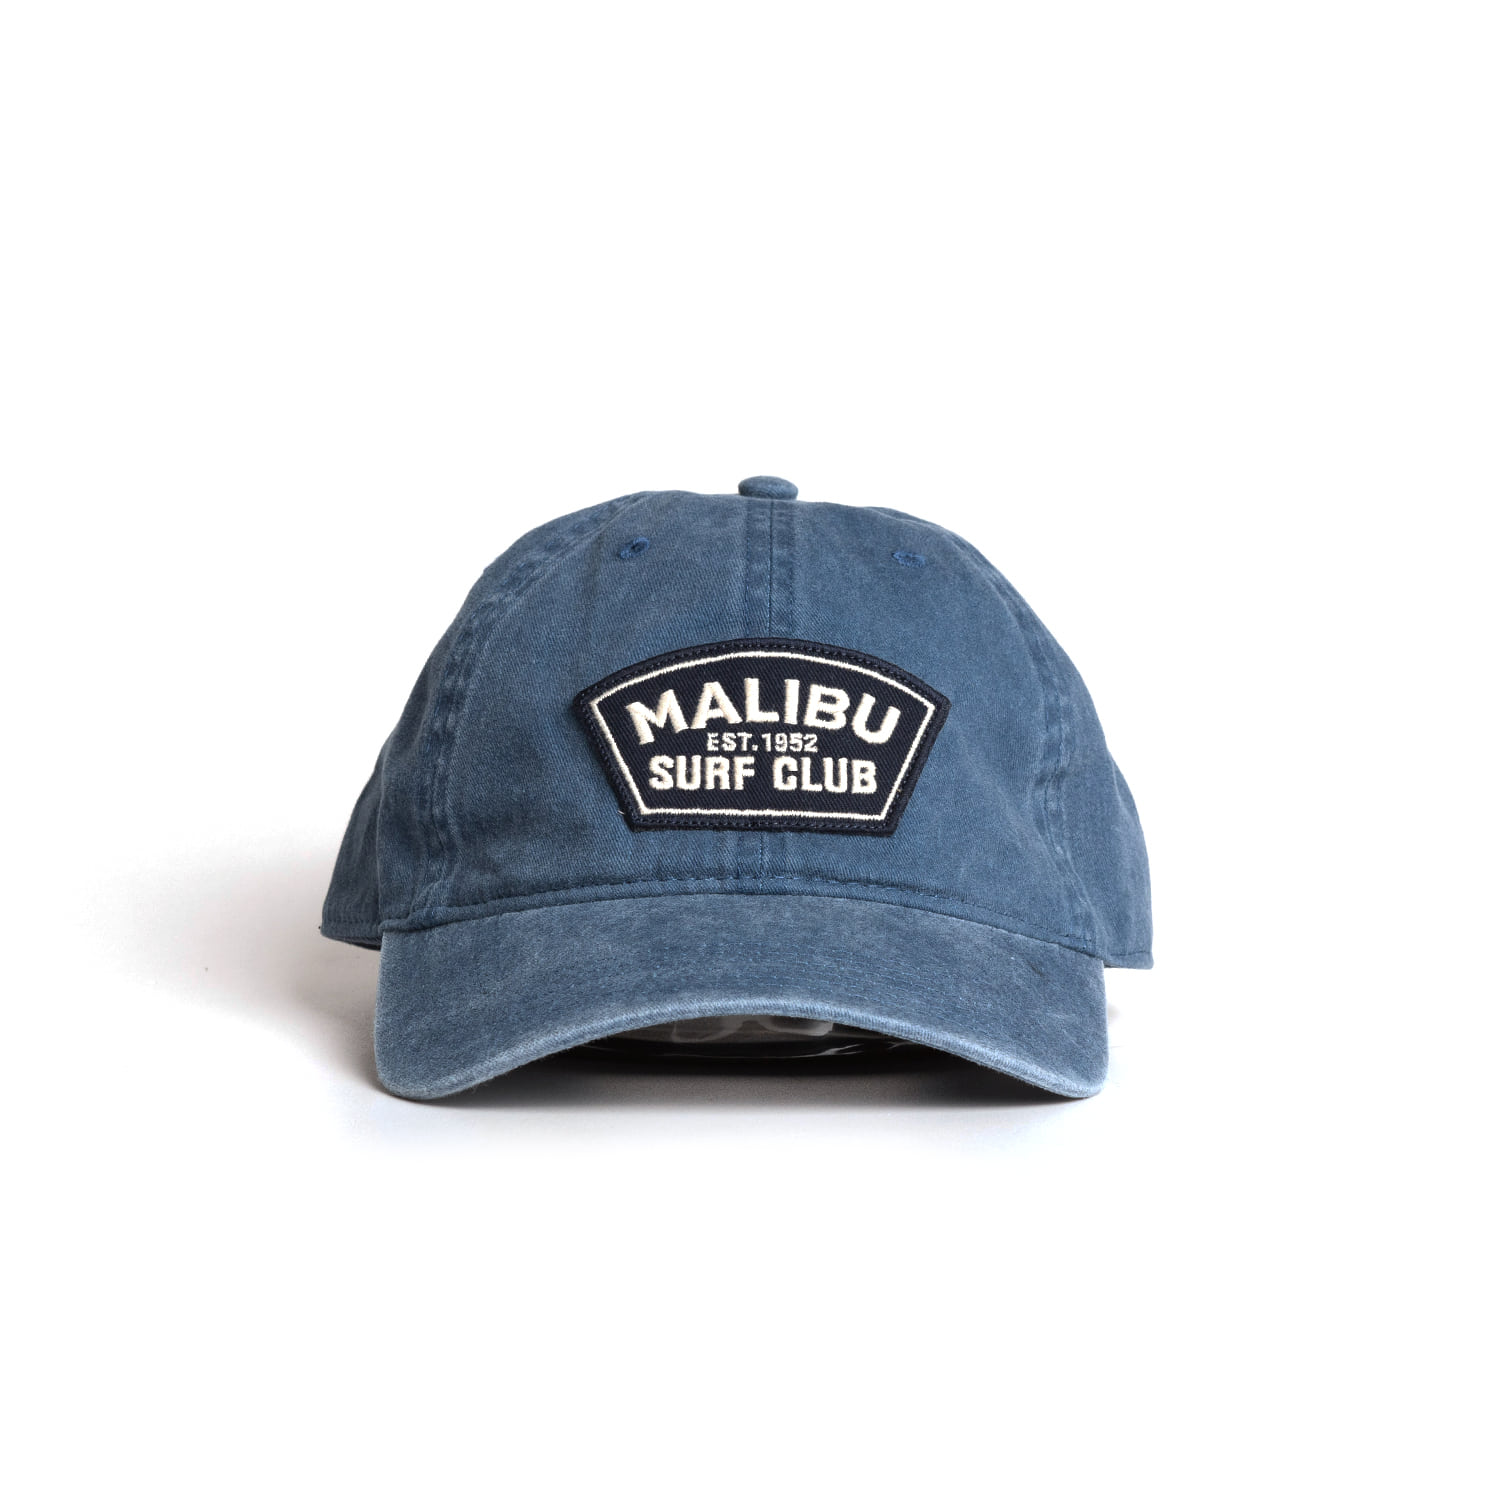 Malibu Surfclub Adjustable Cap